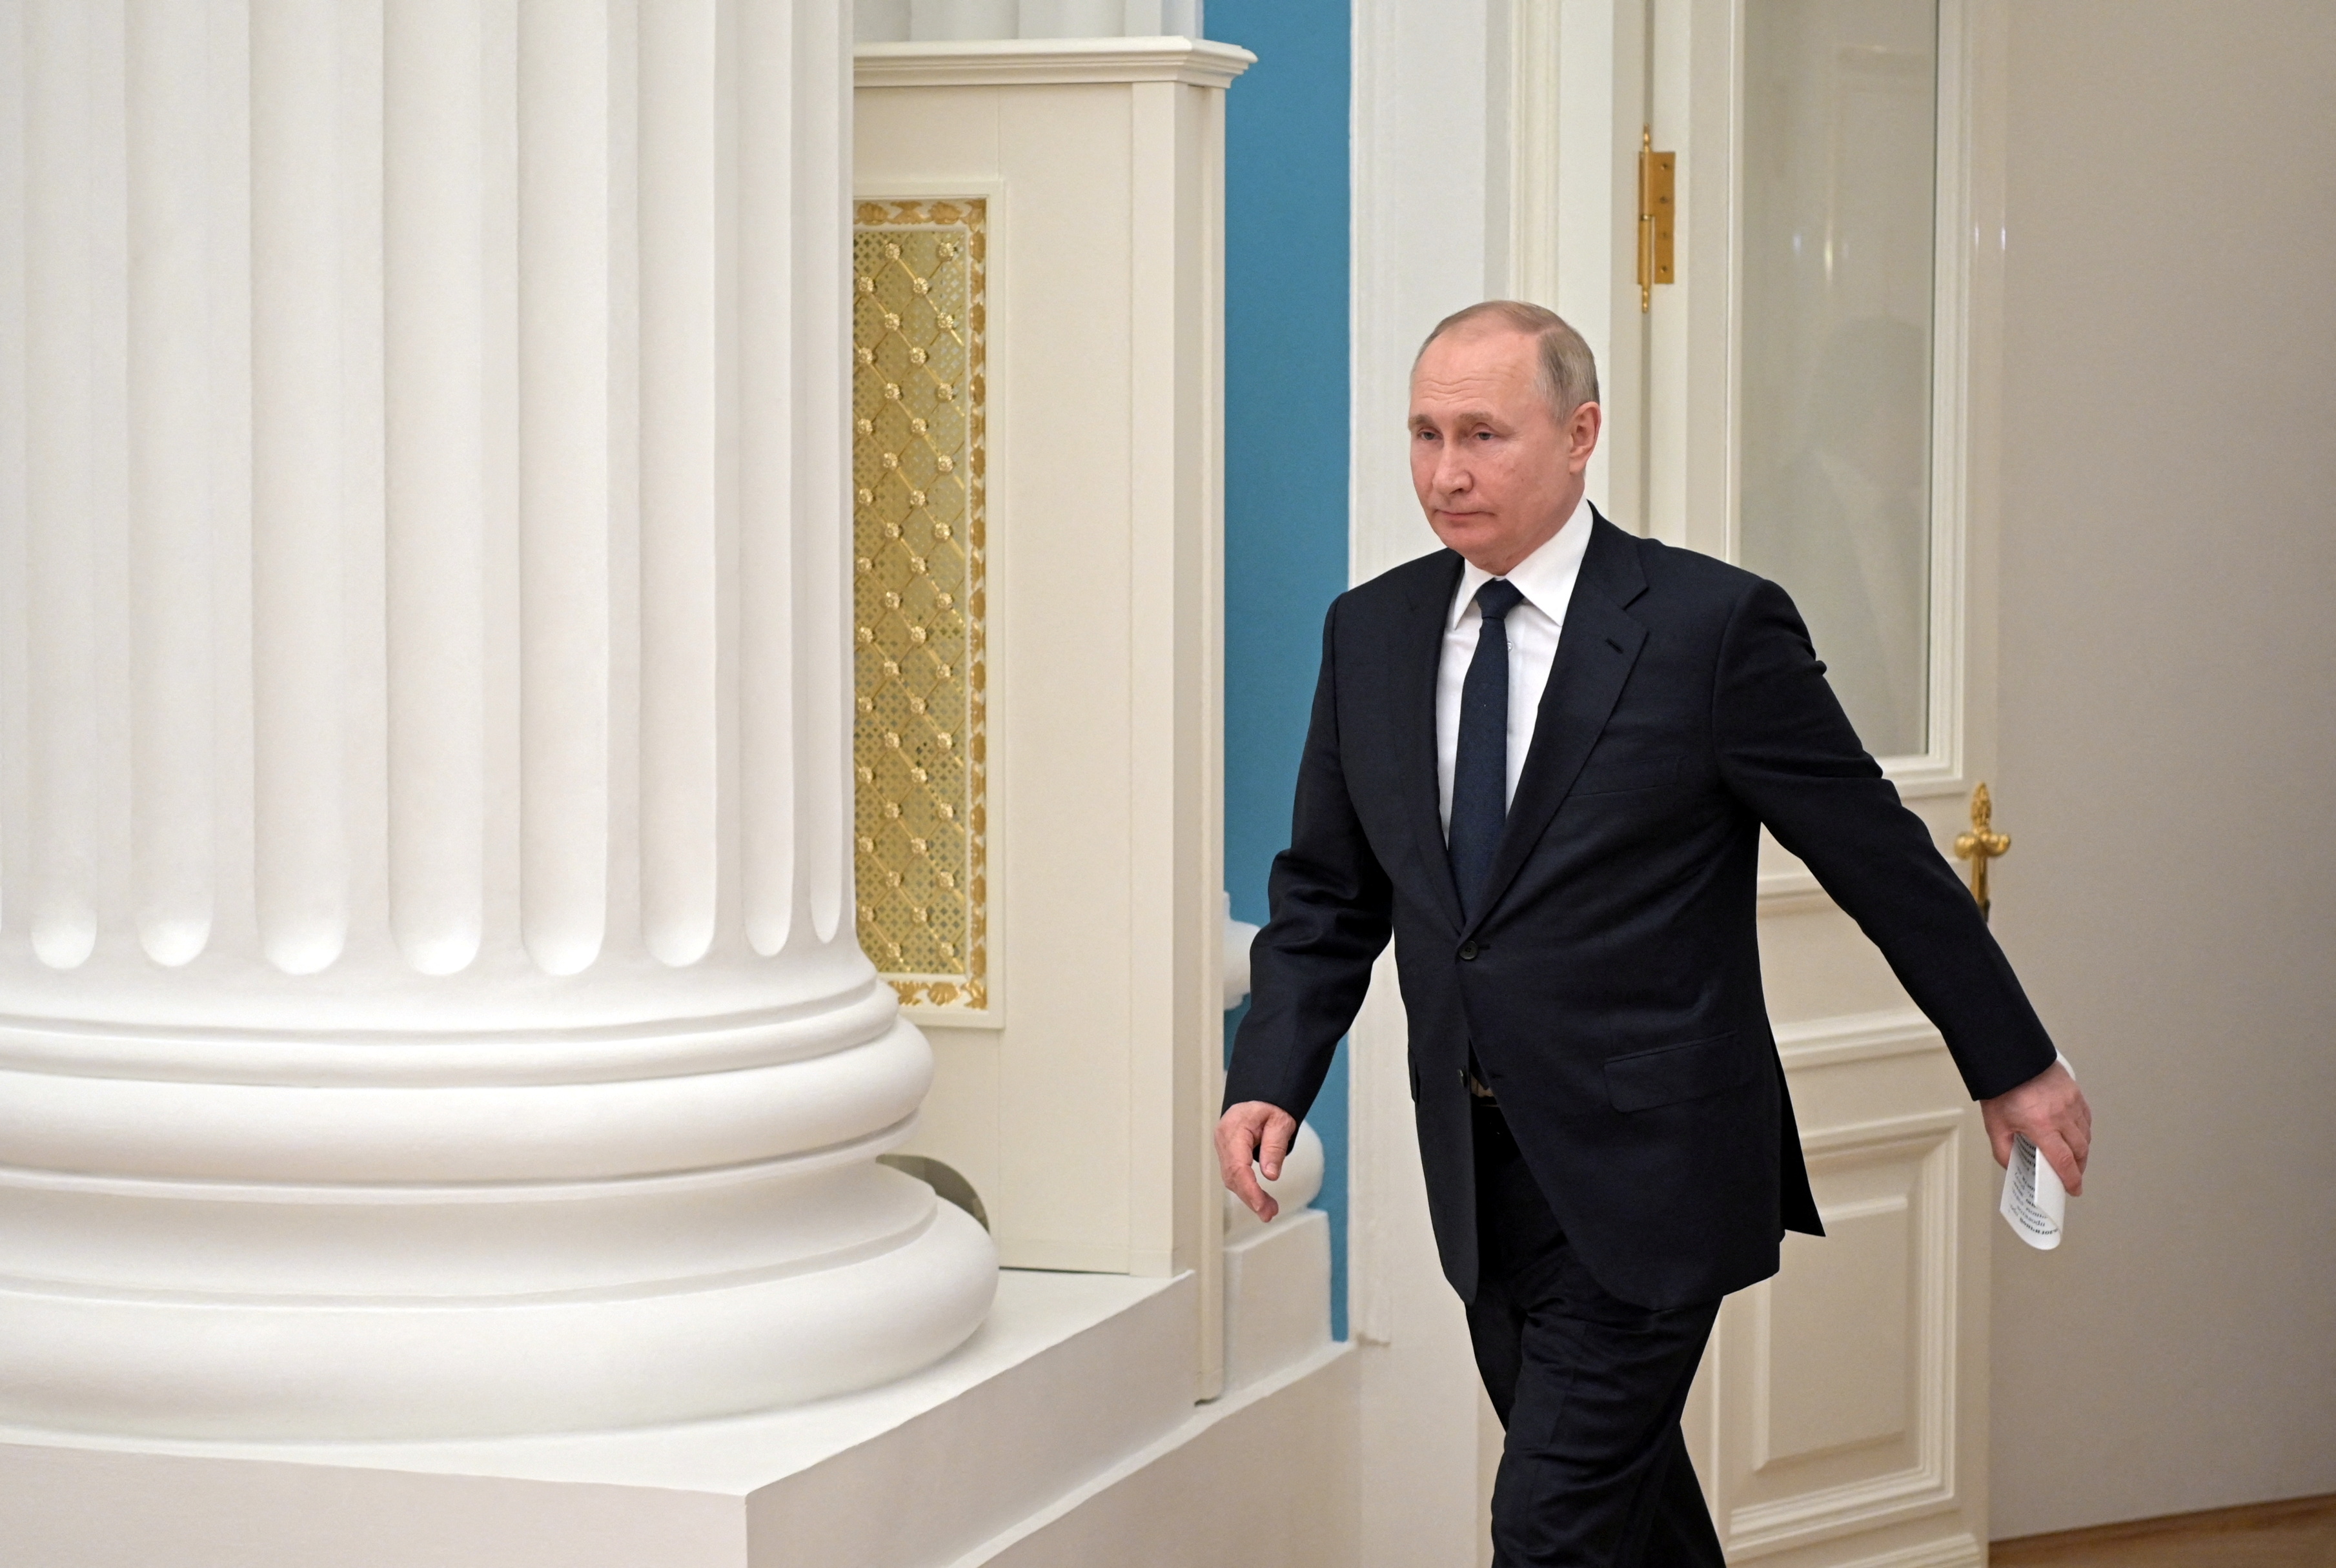 Una hora antes había anunciado que junto a sus colegas del G7 coordinaron una serie de sanciones contra Rusia y Vladimir Putin tras la invasión a Ucrania (Sputnik/Aleksey Nikolskyi/Kremlin via REUTERS)